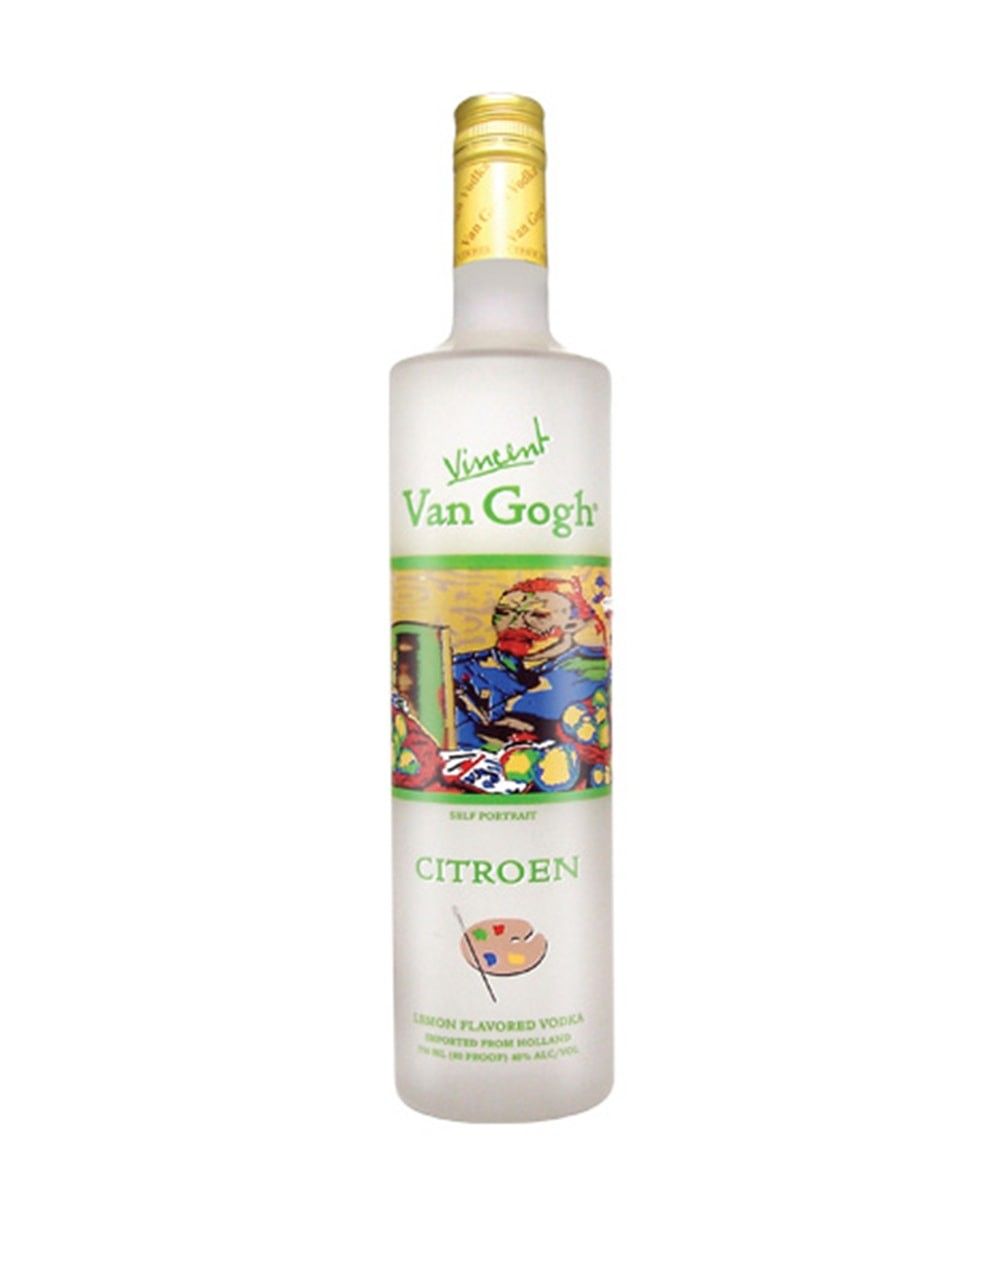 Van Gogh Citroen Vodka | Buy Online or Send as a Gift